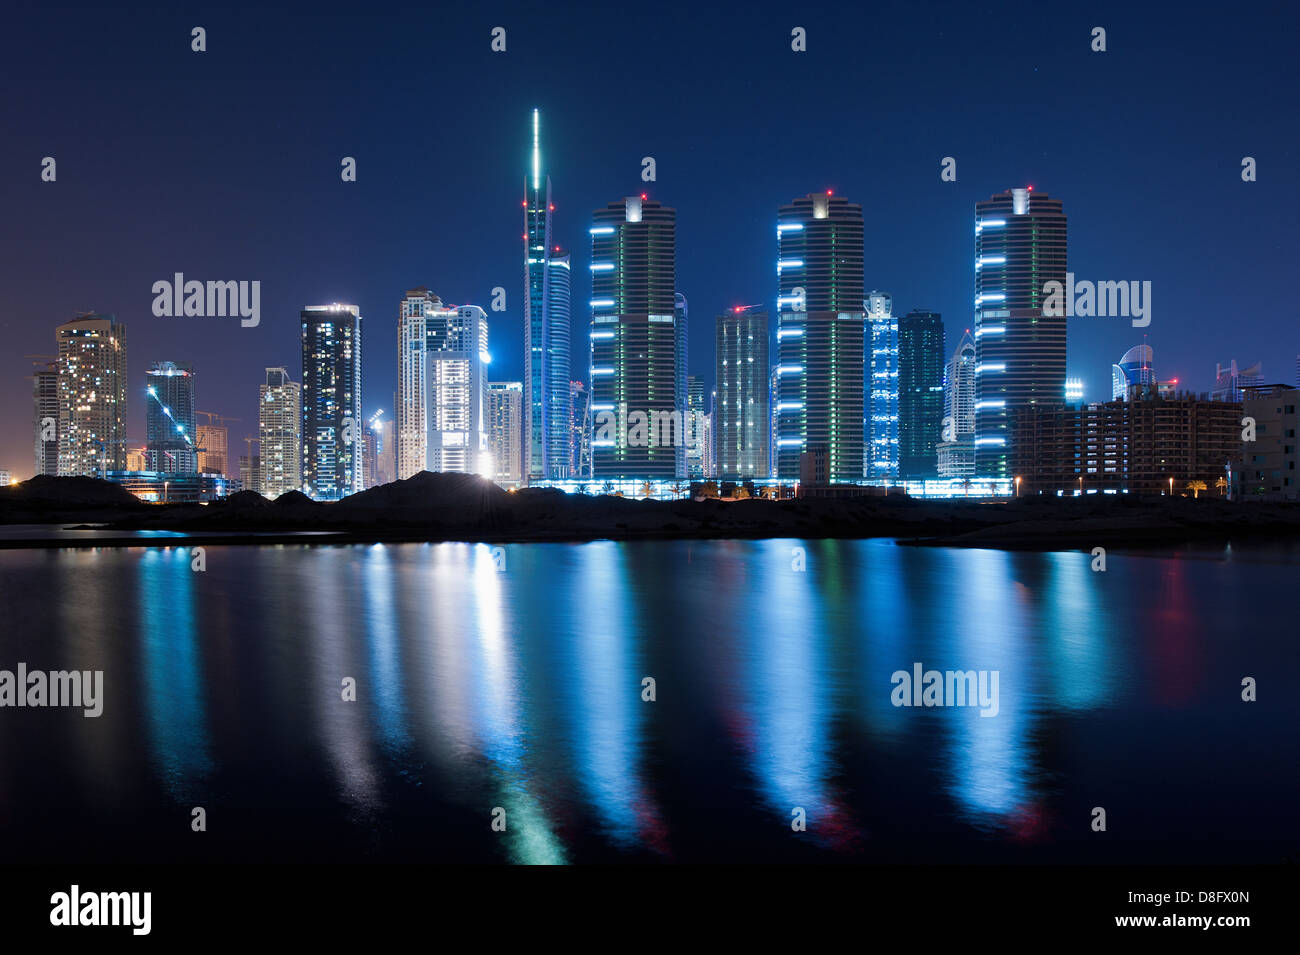 Skyline und Reflexionen von Jumeirah Lakes Towers (JLT) mit Mazaya Türmen und Almas Tower, neue Dubai, Vereinigte Arabische Emirate Stockfoto